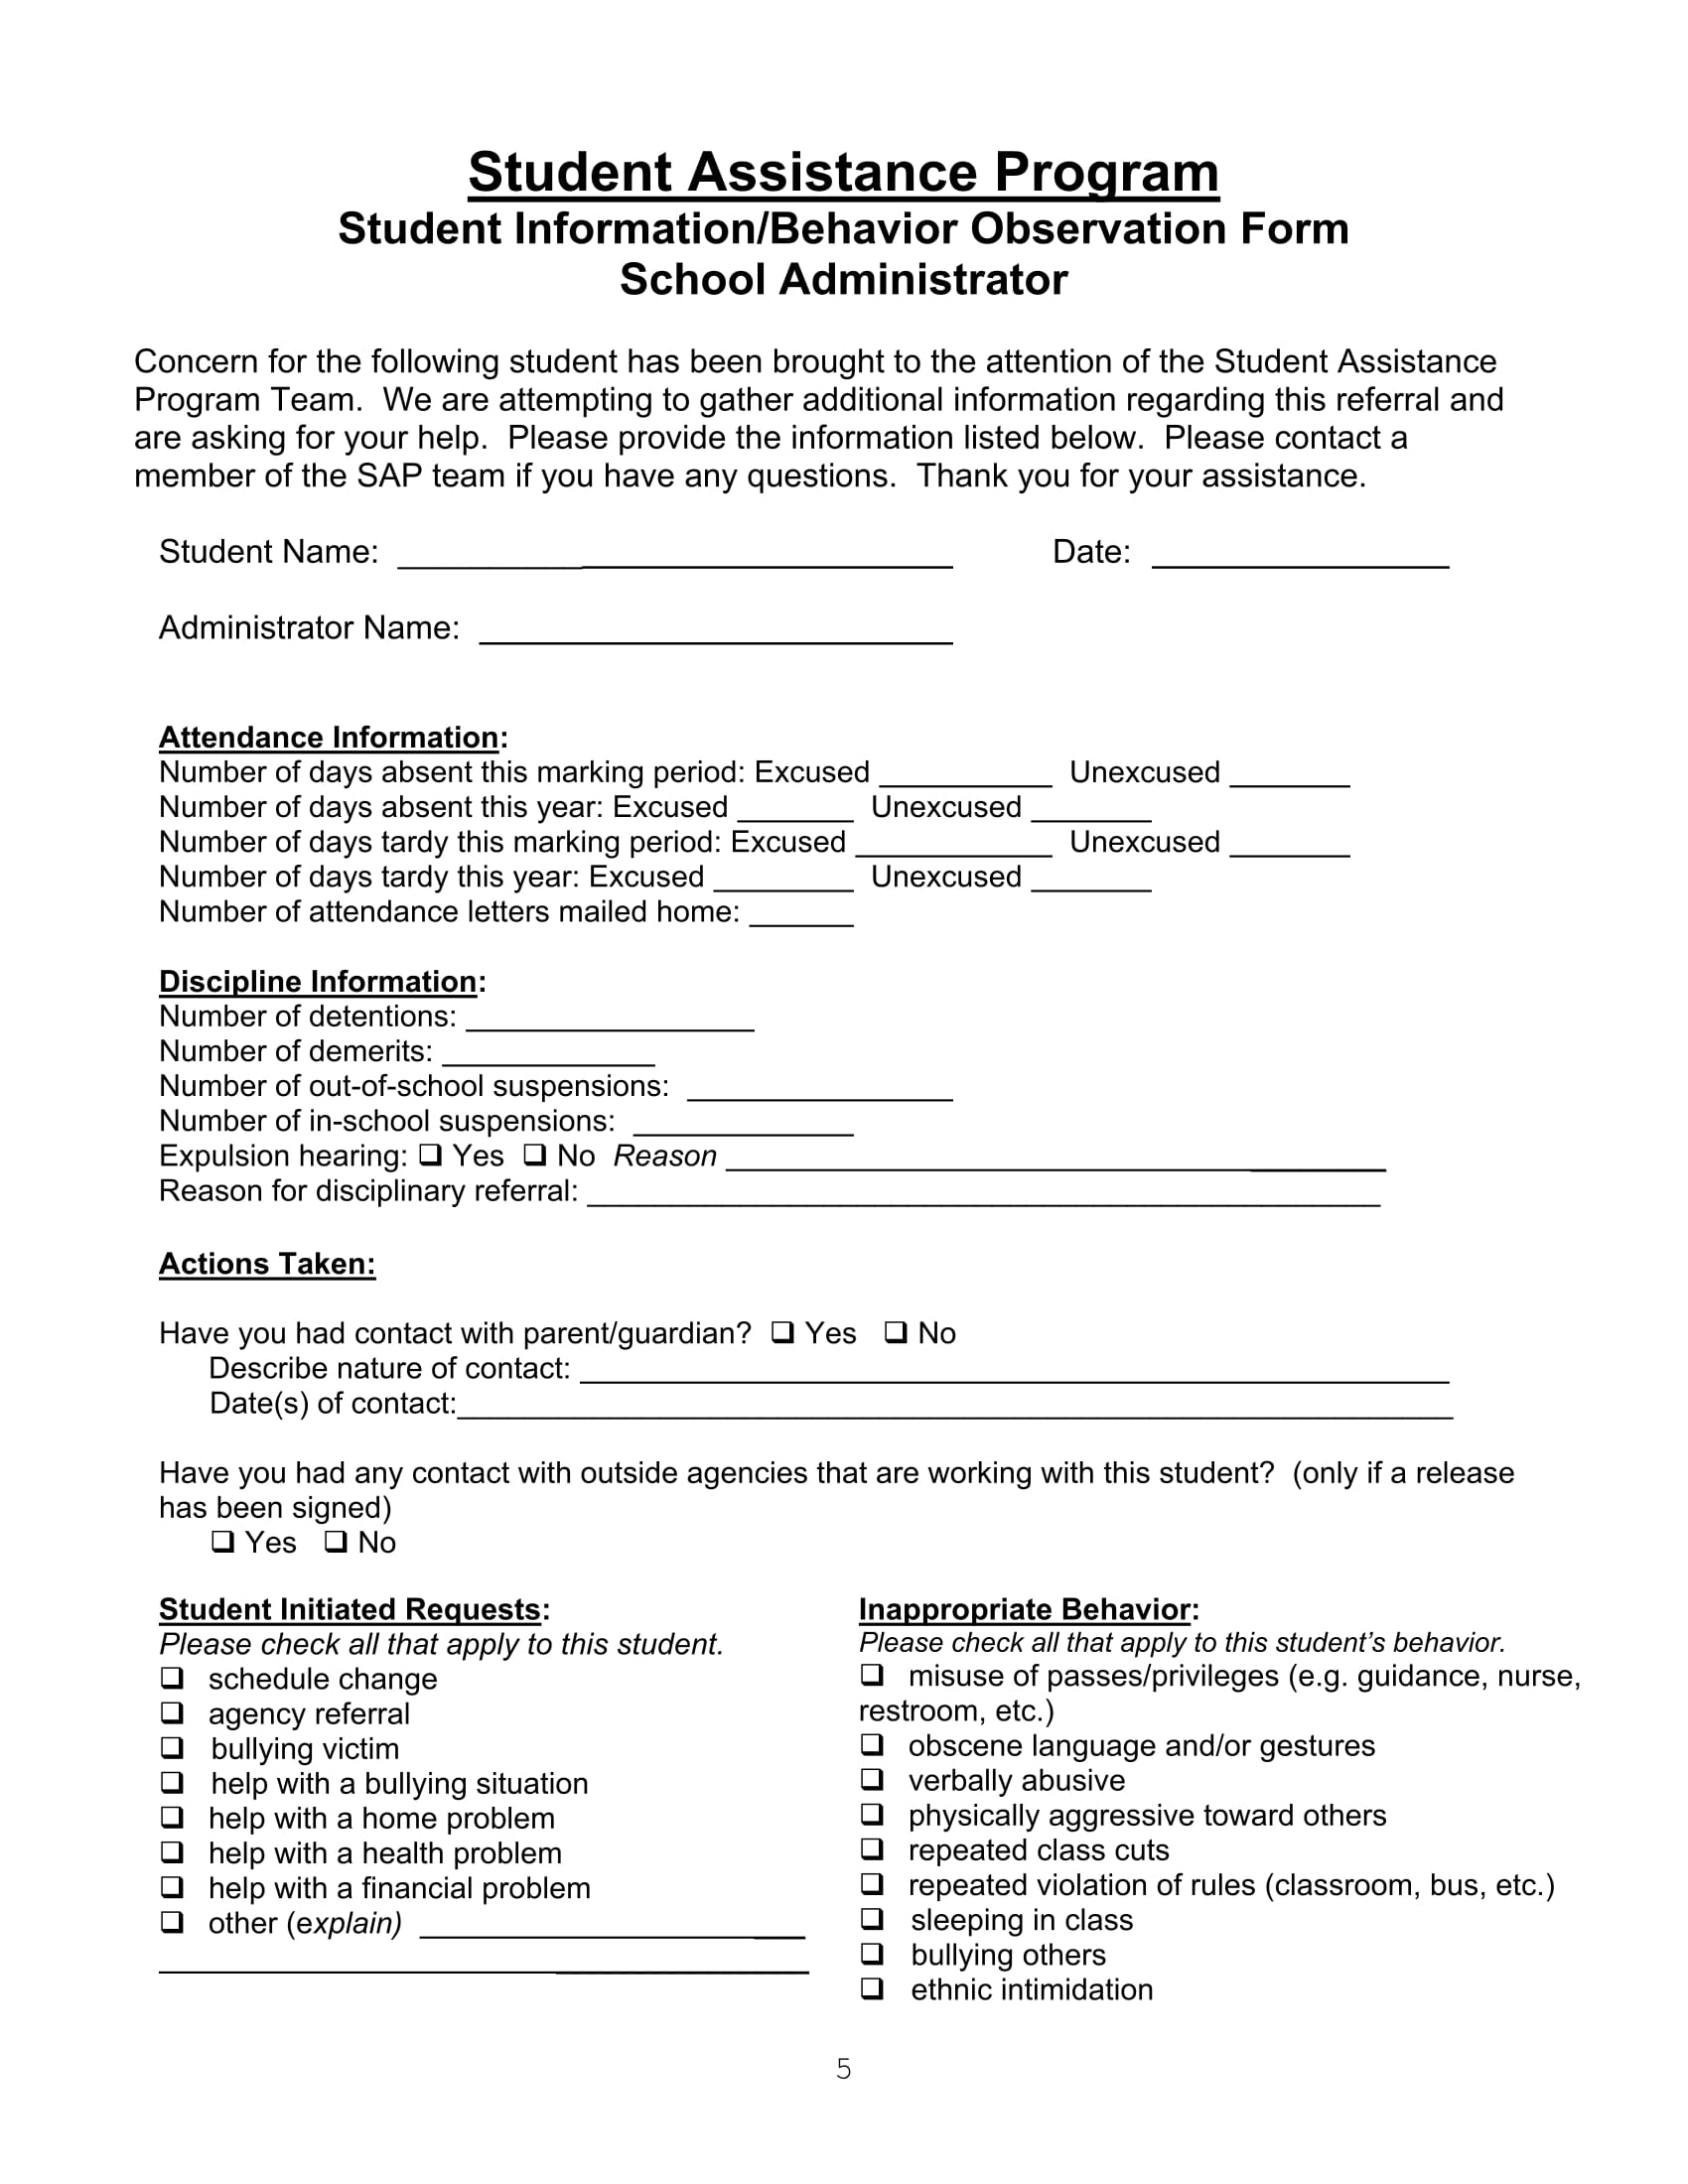 student information behavior observation form 05